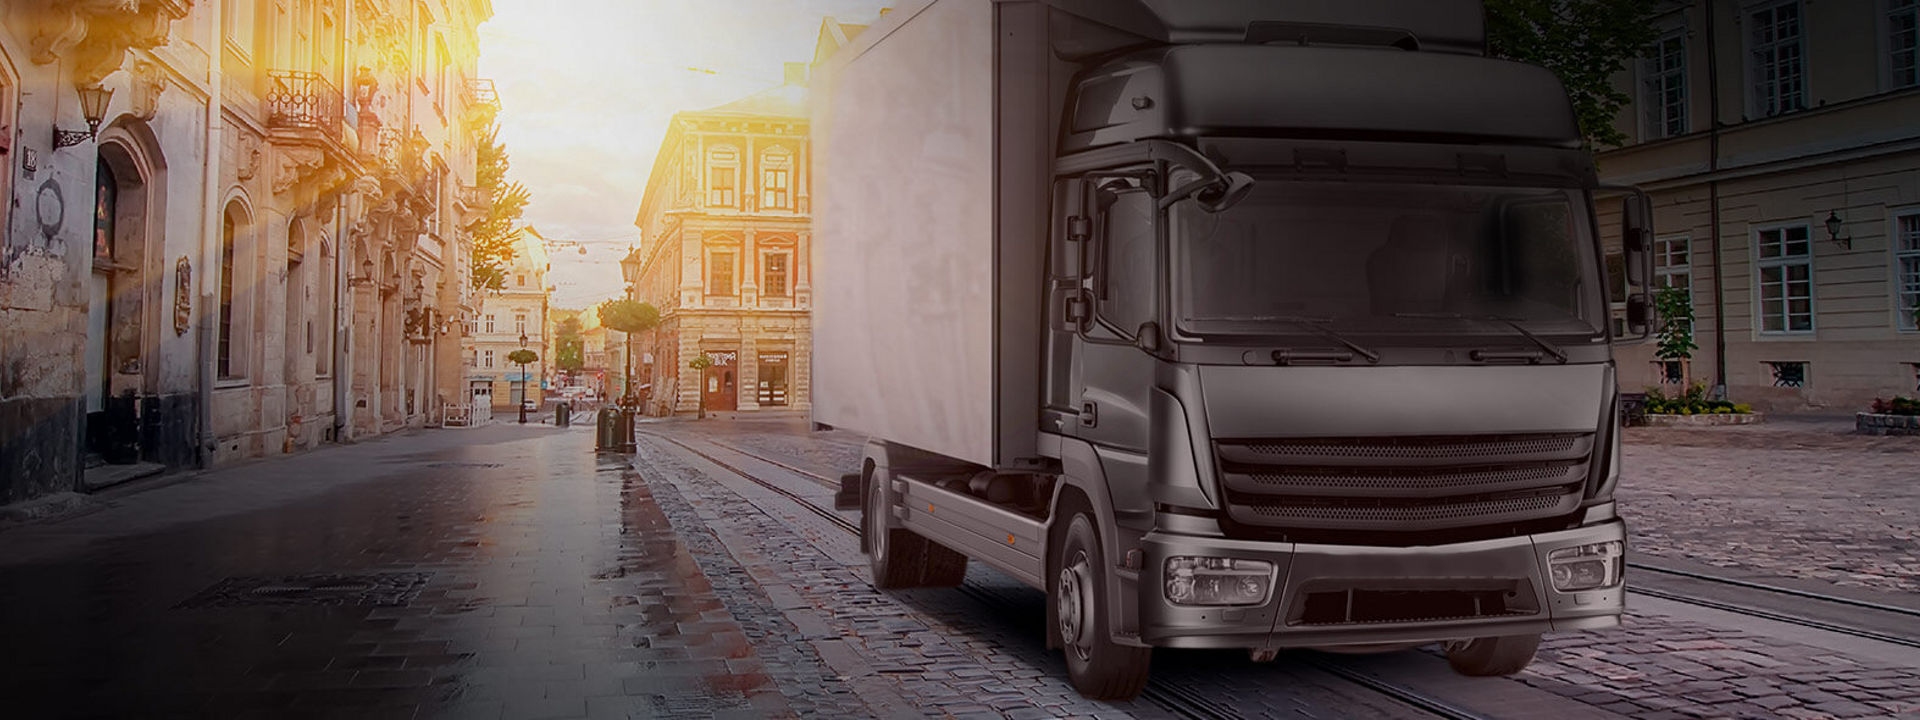 Billedet viser en mindre lastvogn monteret med Bridgestone dæk, som leverer varer inde i en bymidte.